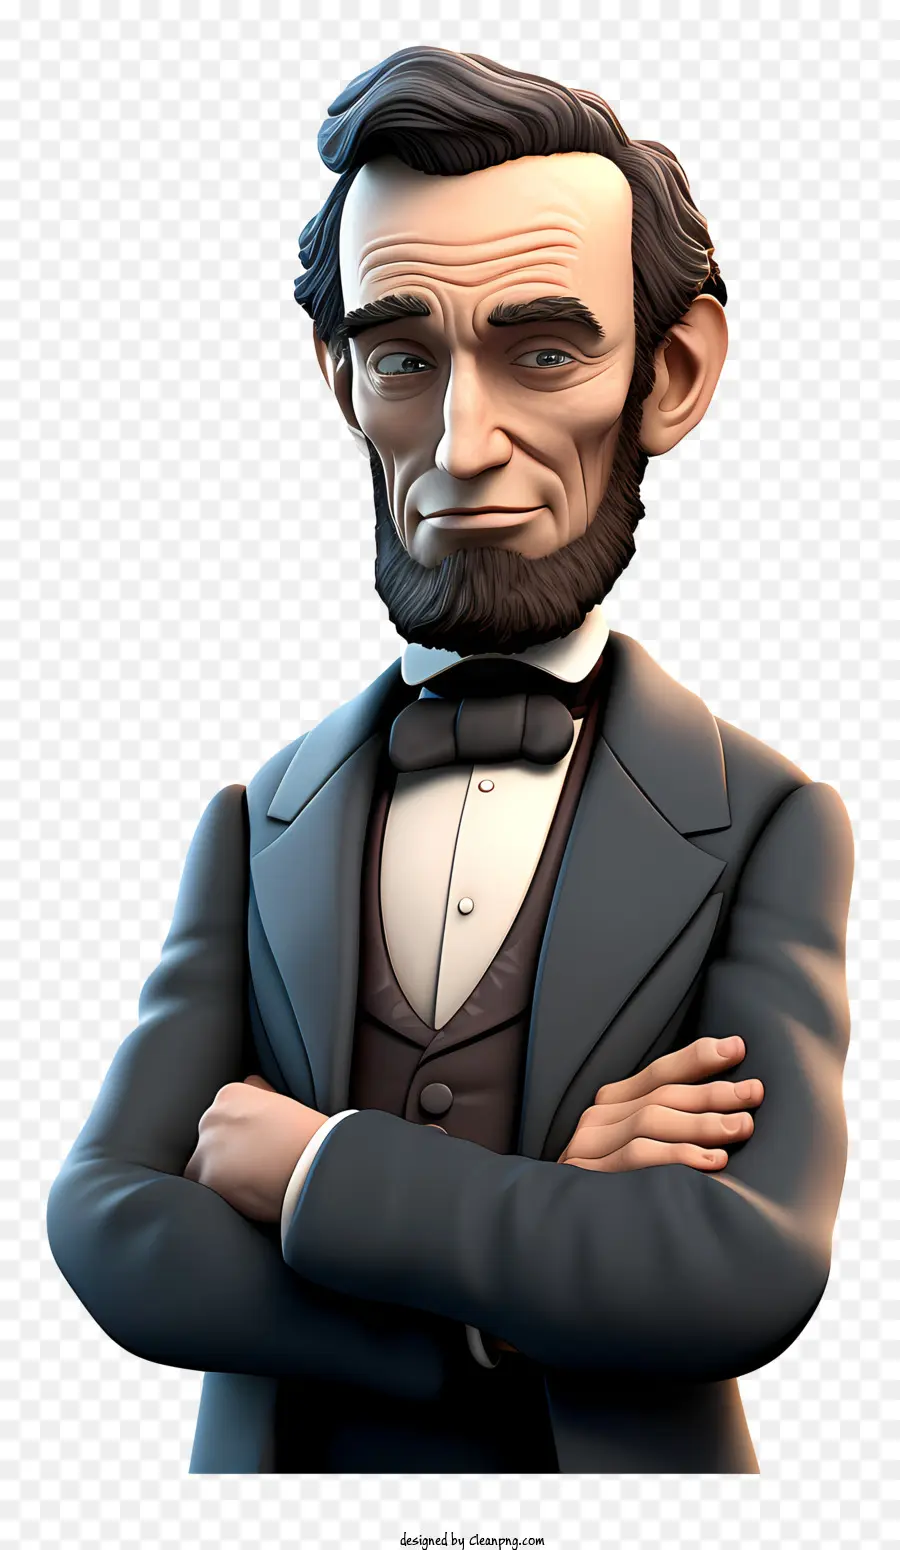 Abraham Lincoln Tổng thống thứ 16 Hoa Kỳ Áo sơ mi trắng - Hình ảnh thực tế của Lincoln nghiêm túc, Chủ tịch thứ 16